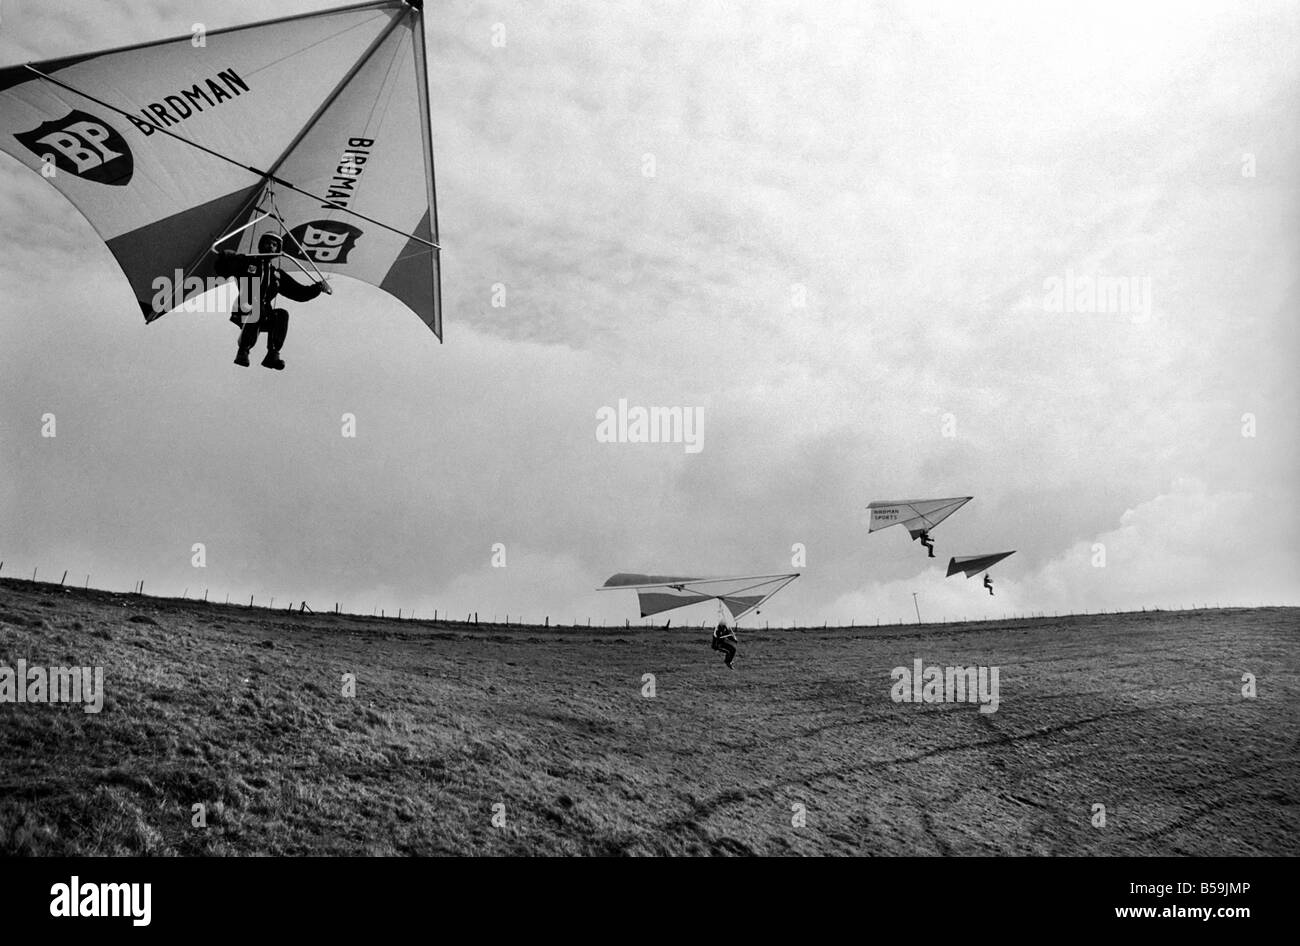 Britische Kite Team. Hang Gliding WM nächste Woche in Australien stattfindet hatten britische Team gesponsert von B.P. Last-Minute-Get-together am Nachmittag (Freitag) in Marlborough Downs, Wiltshire. März 1975 75-01306 Stockfoto